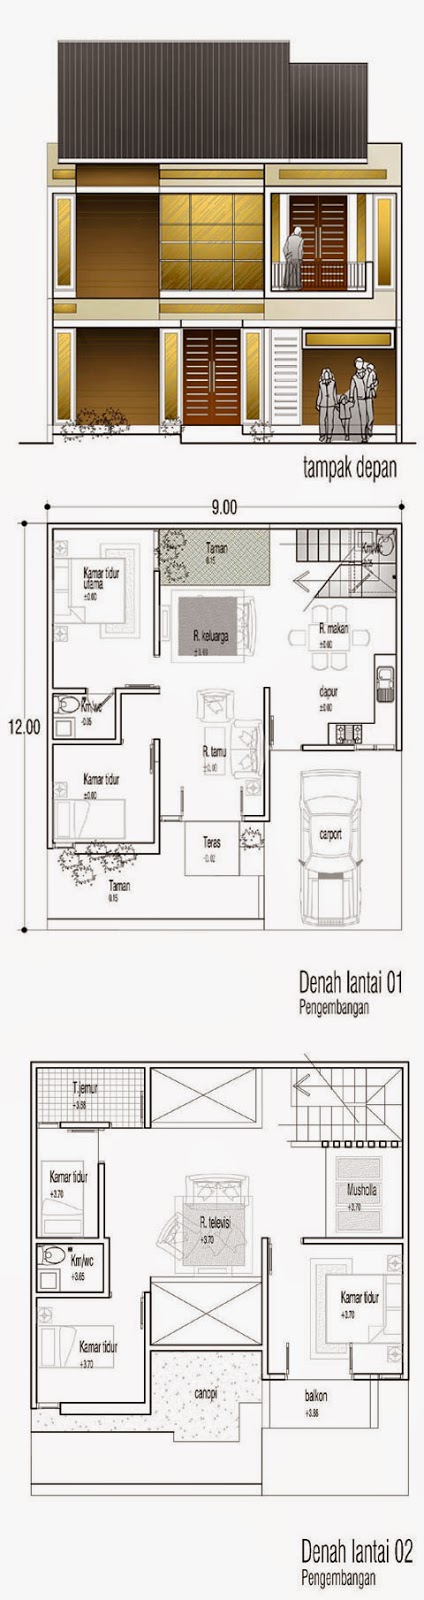 Contoh Gambar Rumah Type 80 2 Lantai Desain Sederhana Denah